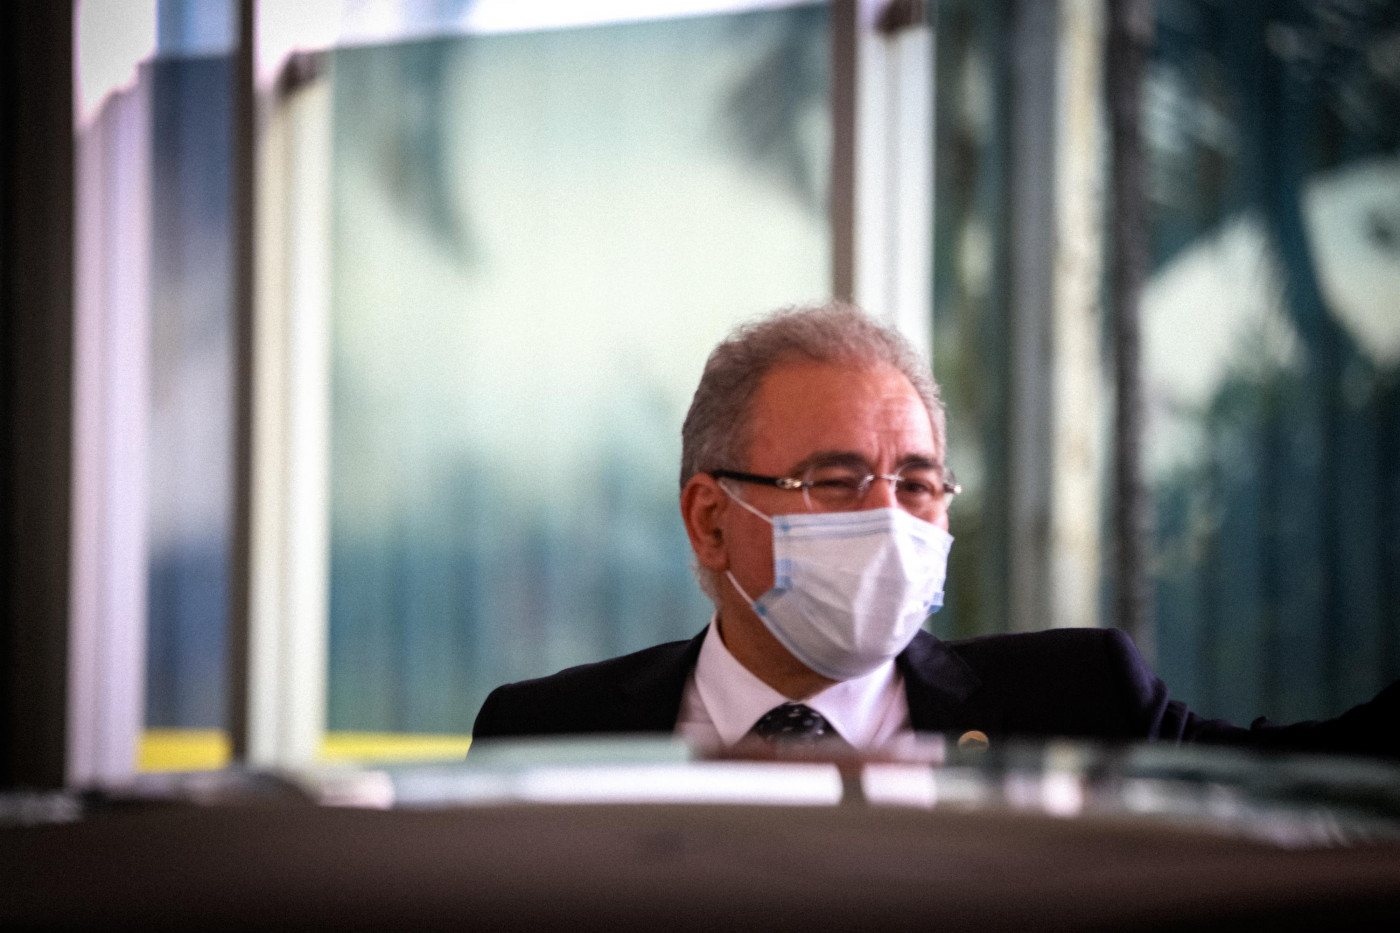 O Ministro da Saúde, Marcelo Queiroga, é visto saindo do prédio do Ministério da Saúde rumo ao Palácio do Planalto em Brasília